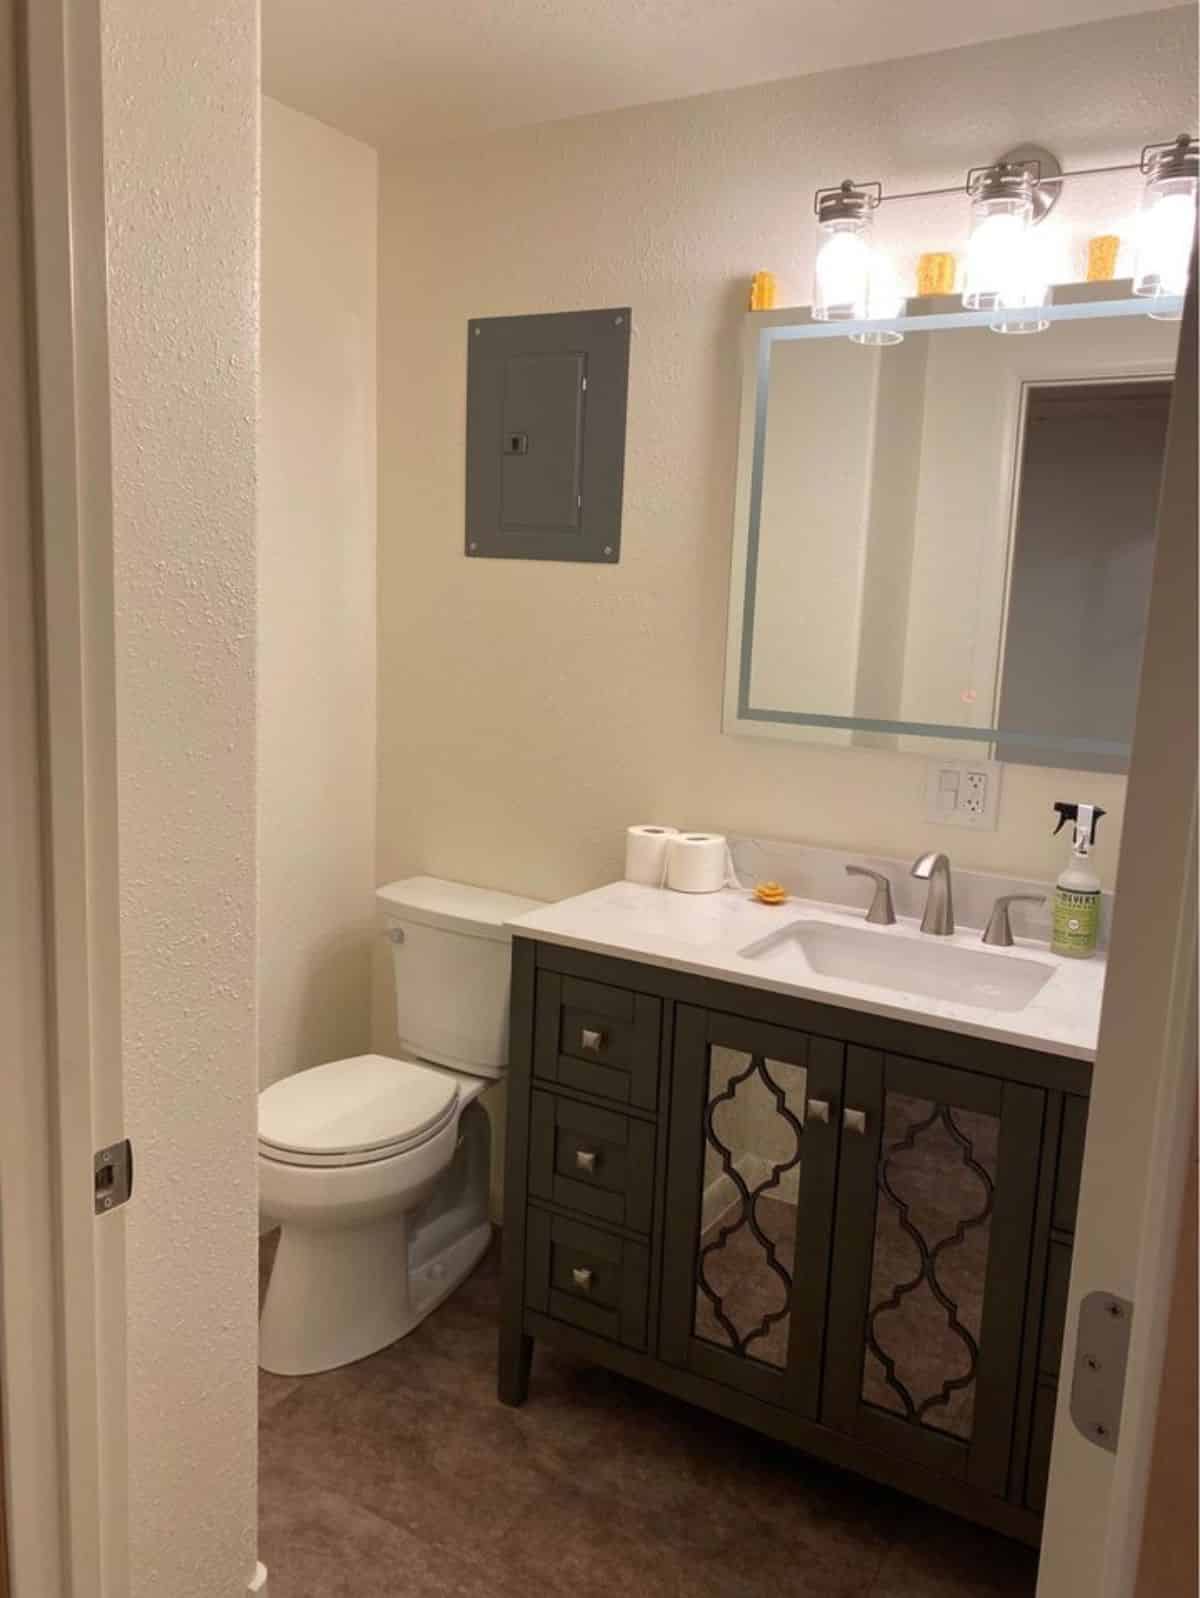 Standard toilet, sink with vanity & mirror in bathroom of Luxurious Micro Living